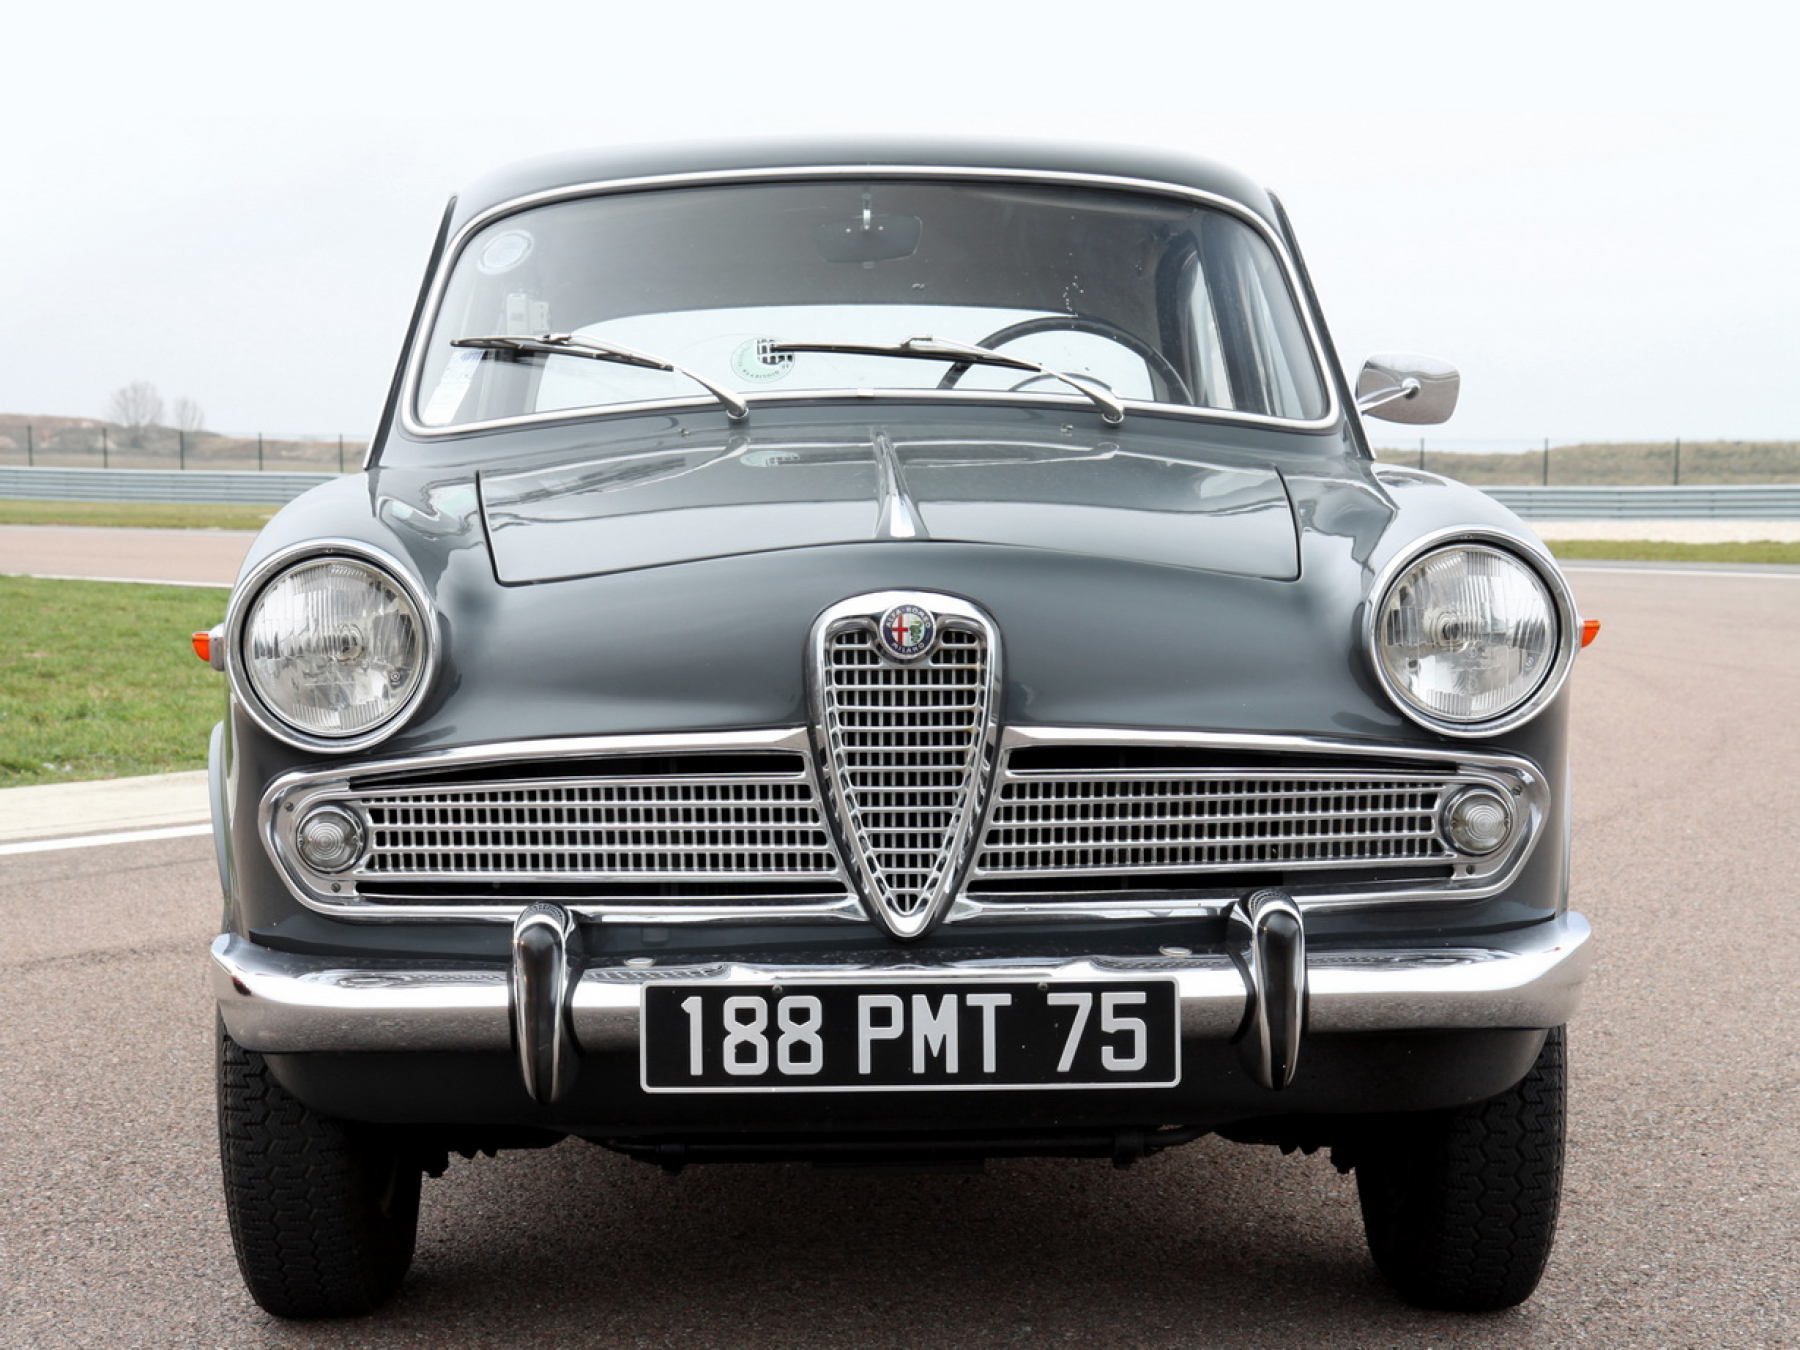 Le célèbre modèle Alfa Romeo Giulietta : toutes les infos, giulietta 